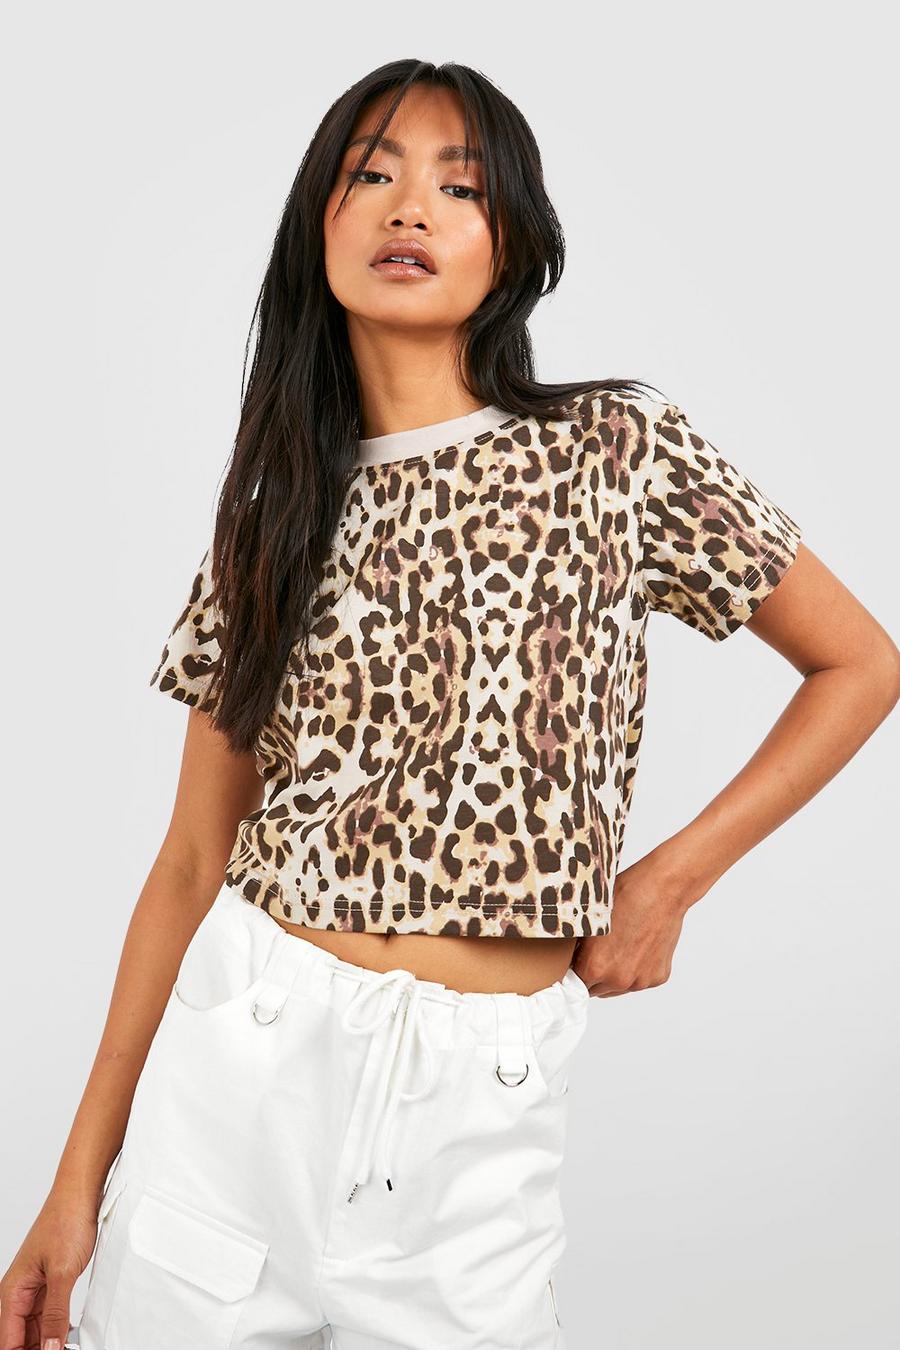 Kastiges T-Shirt mit Leopardenprint, Leopard